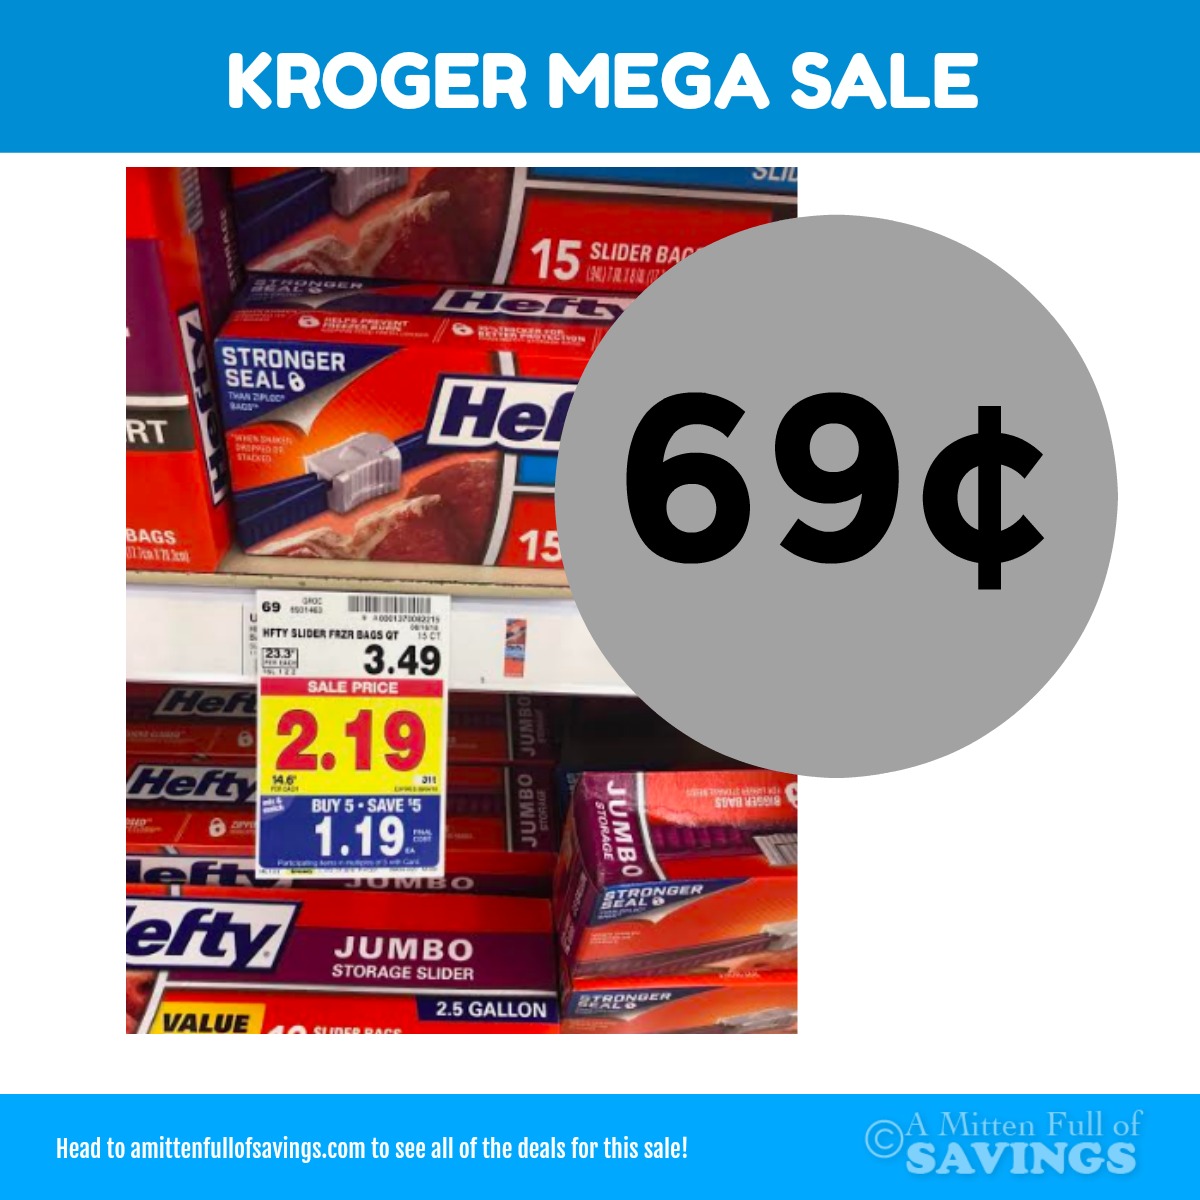 Kroger MEGA: Hefty Slider bags for only 69 cents